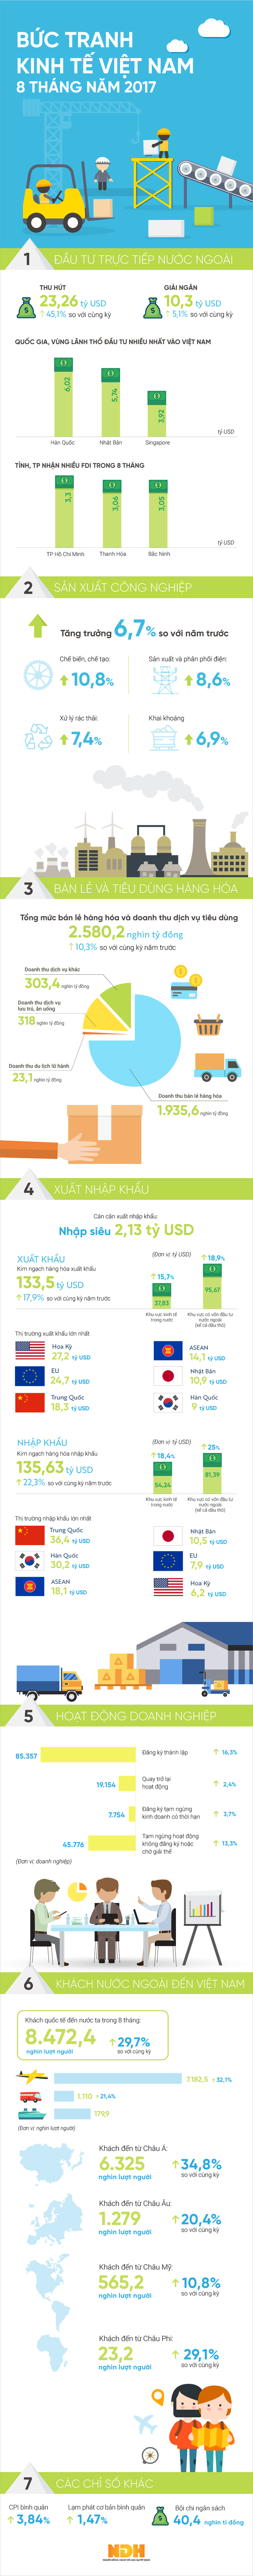  [Infographic] Kinh tế Việt Nam 8 tháng 2017: Nhiều điểm sáng  - Ảnh 1.